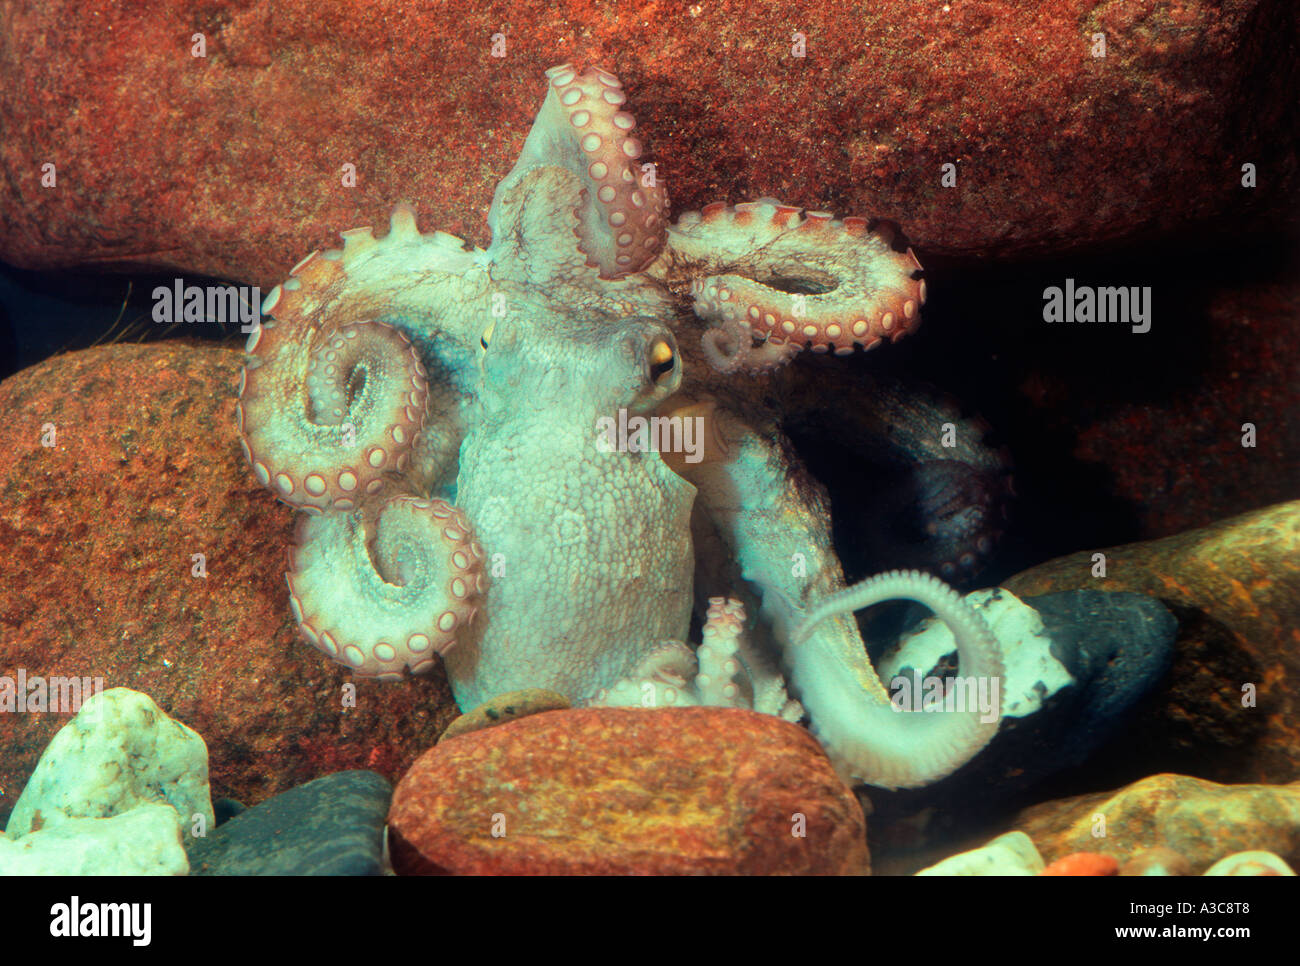 Common Octopus, Octopus vulgaris Stock Photo